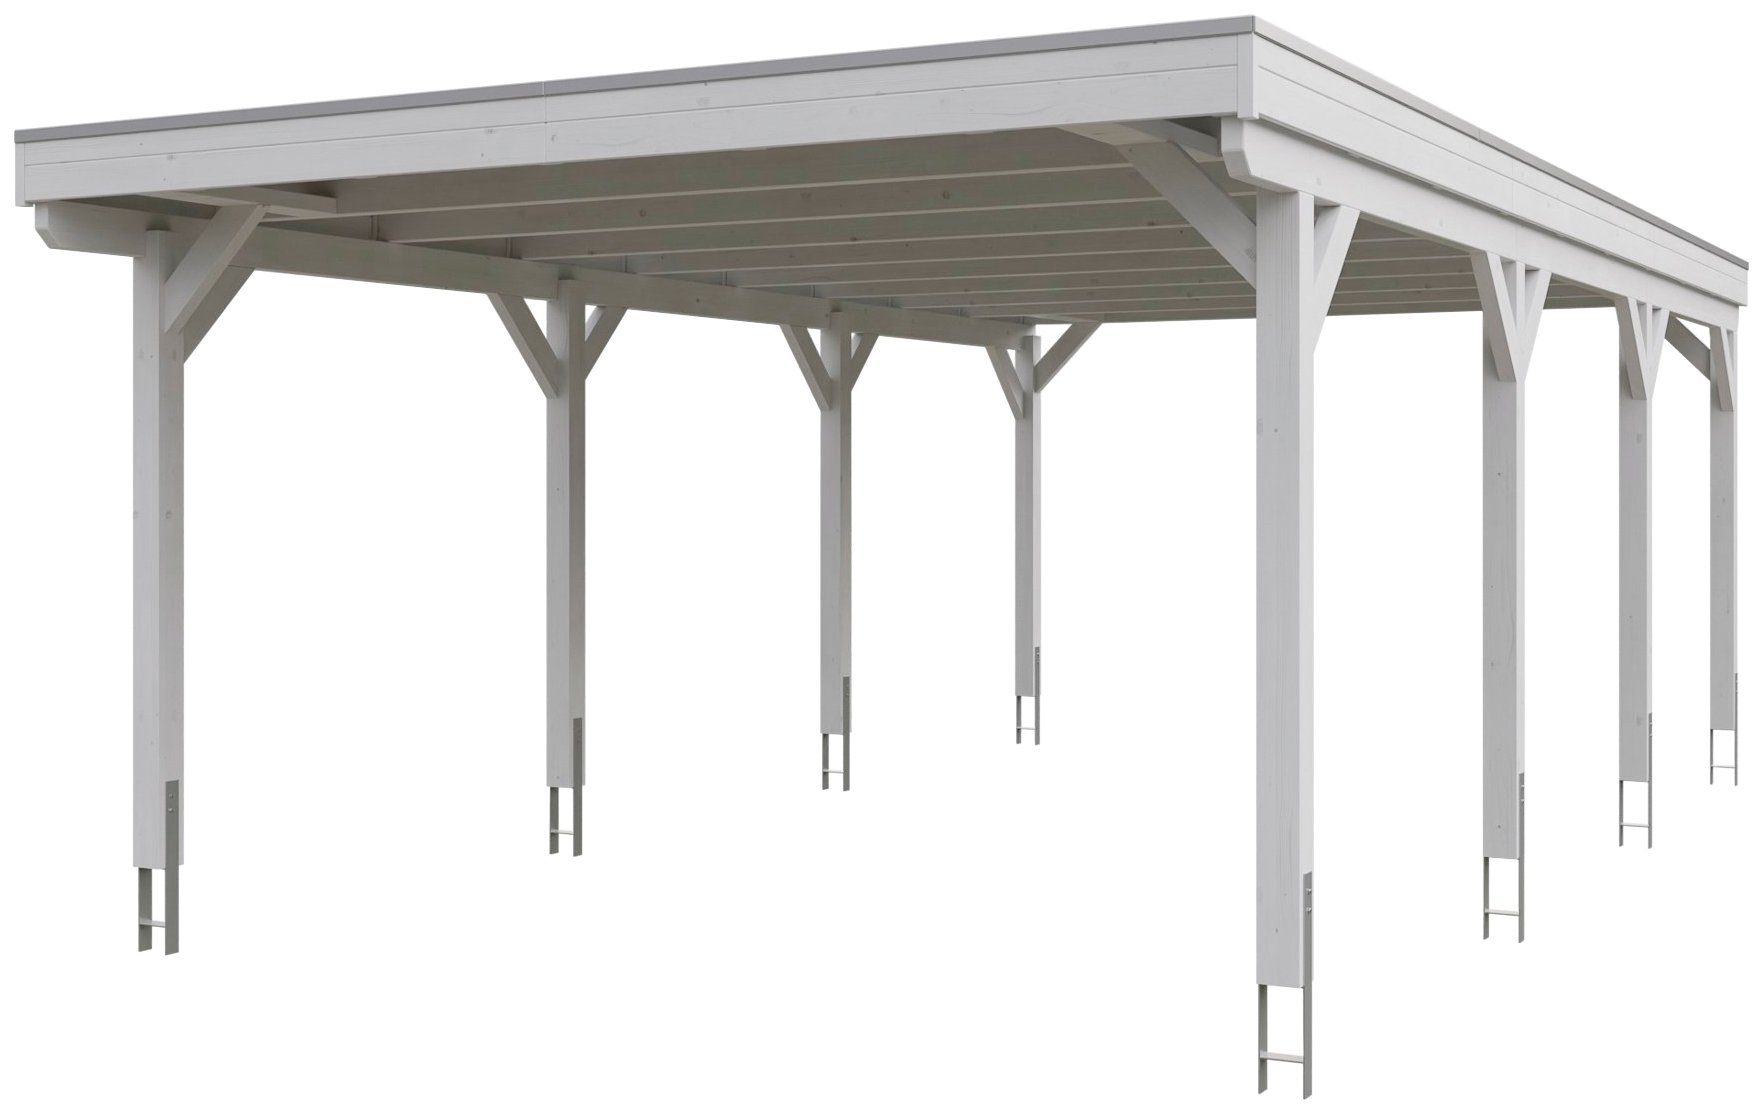 Skanholz Einzelcarport Grunewald, BxT: 427x796 cm, 395 cm Einfahrtshöhe,  mit Aluminiumdach, Flachdach mit Aluminium-Dachplatten, farblich behandelt  in weiß